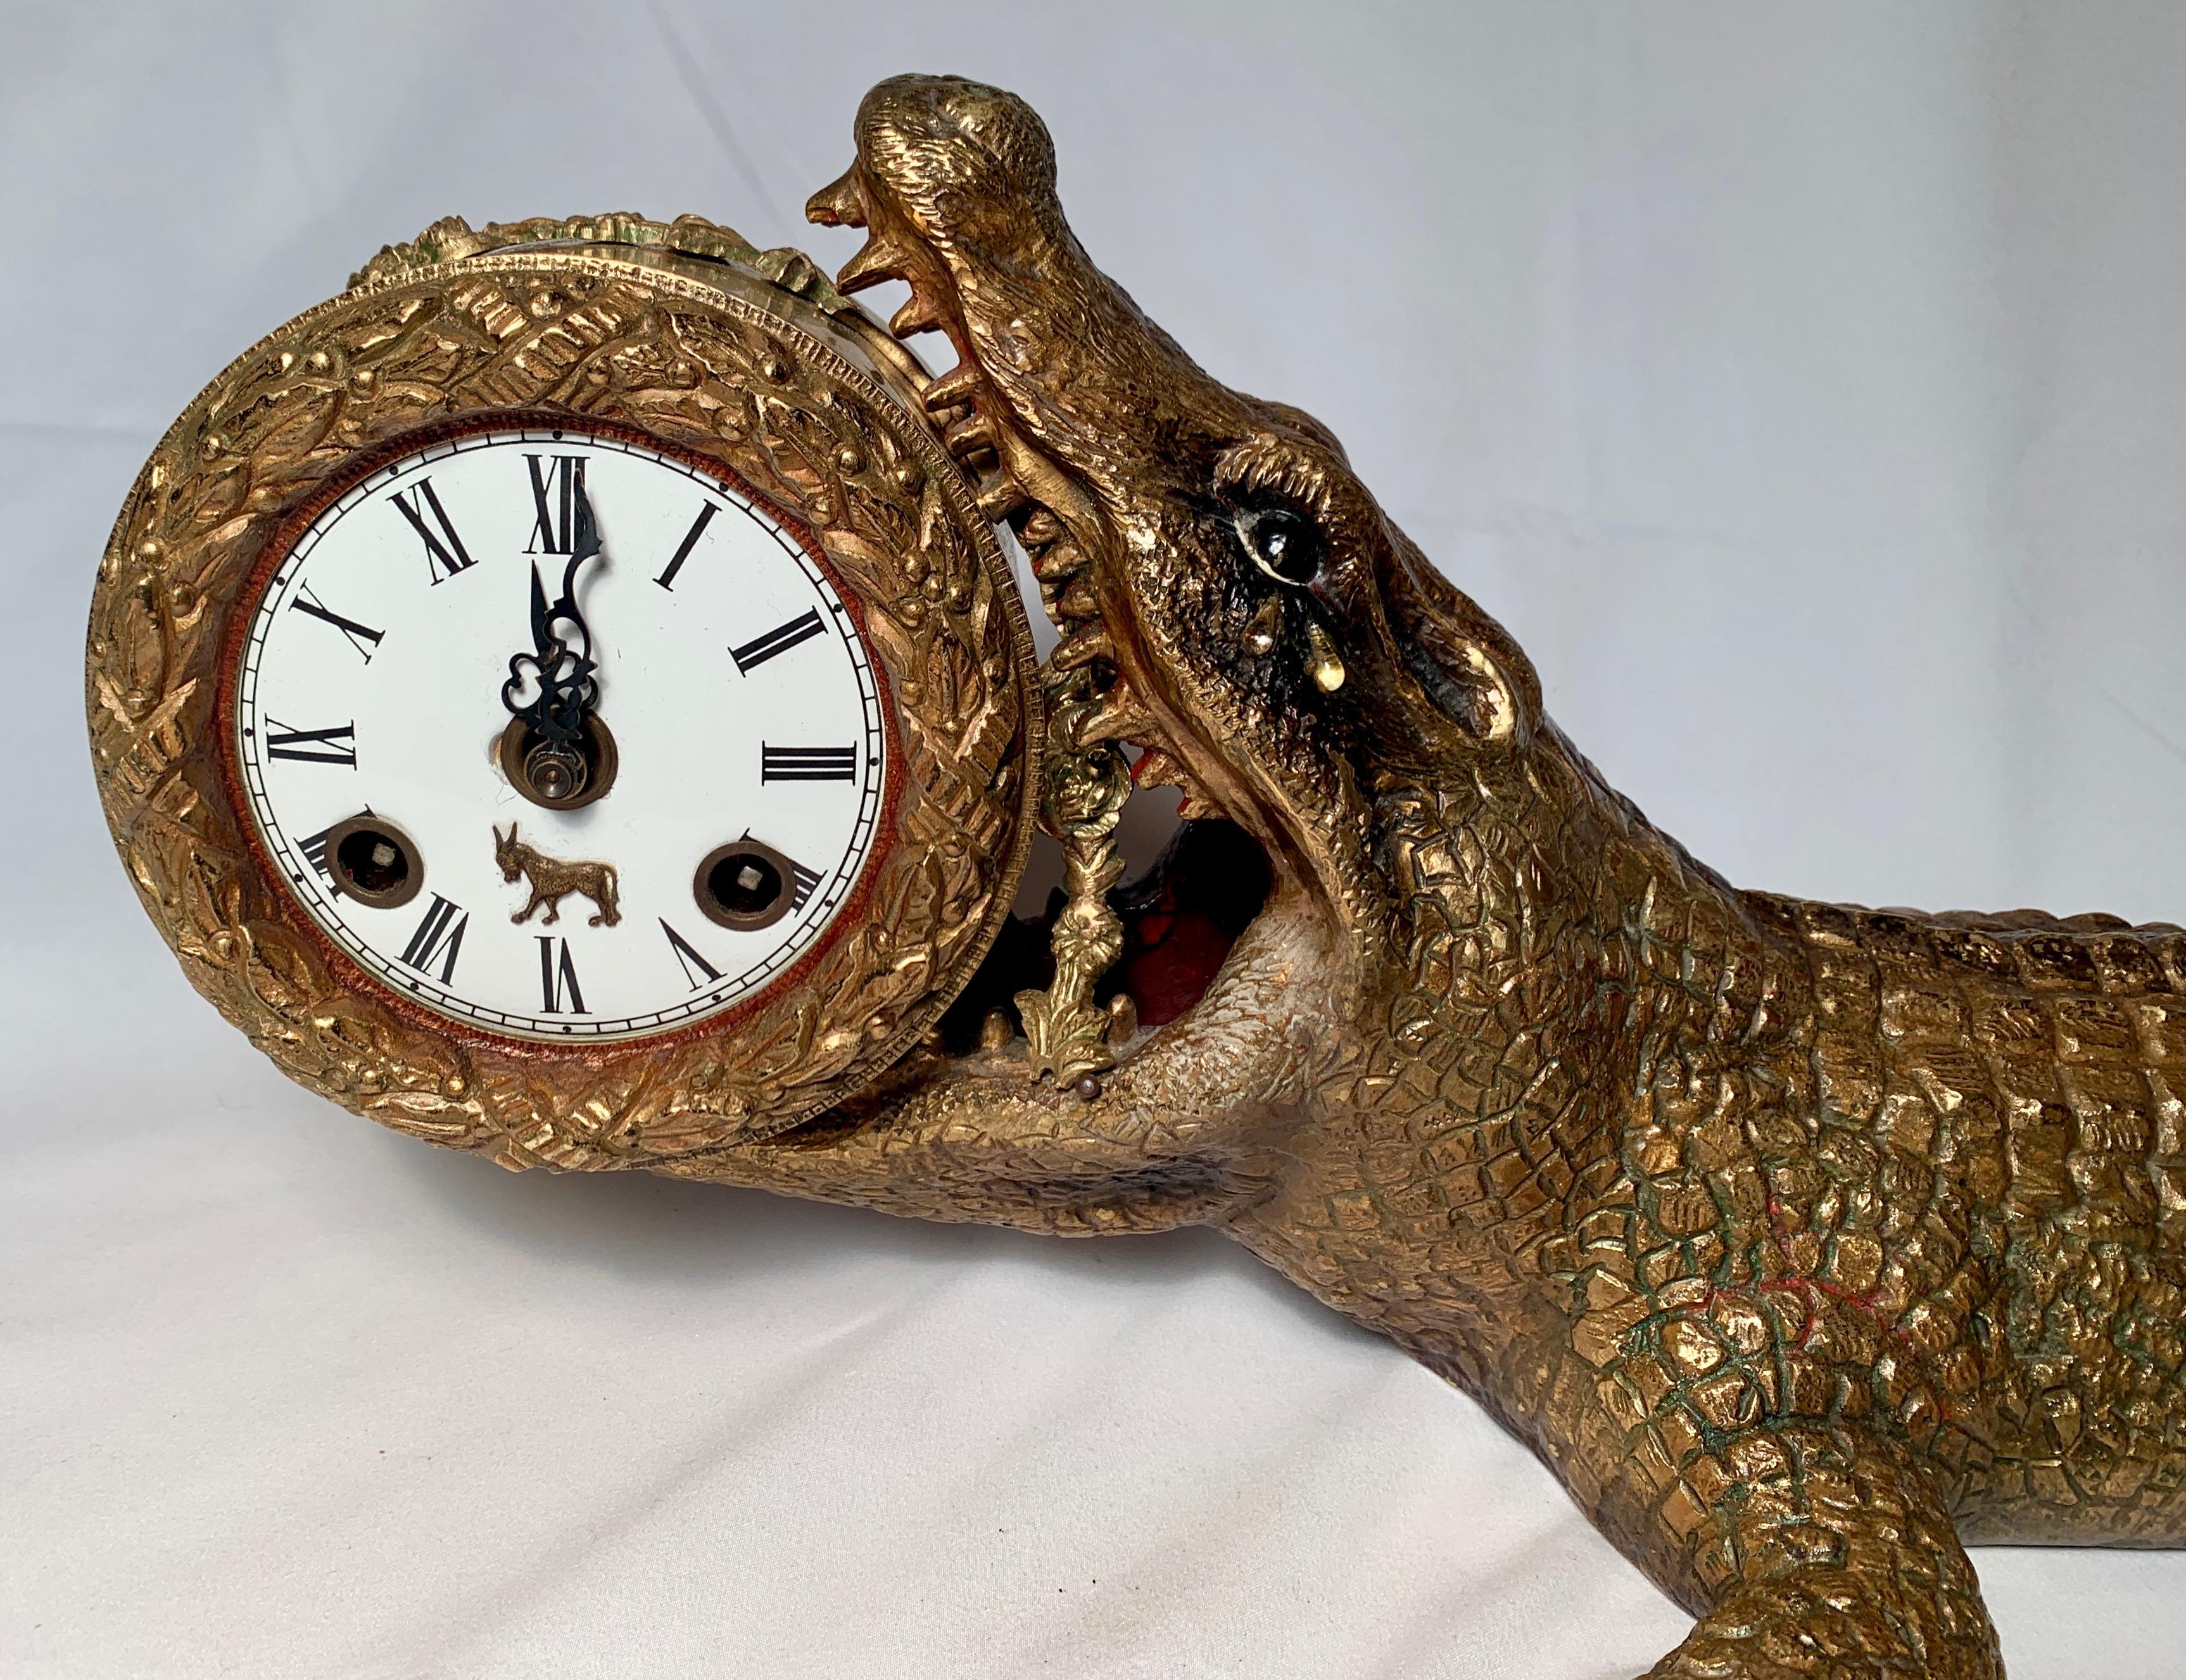 Antique bronze alligator clock, circa 1900.